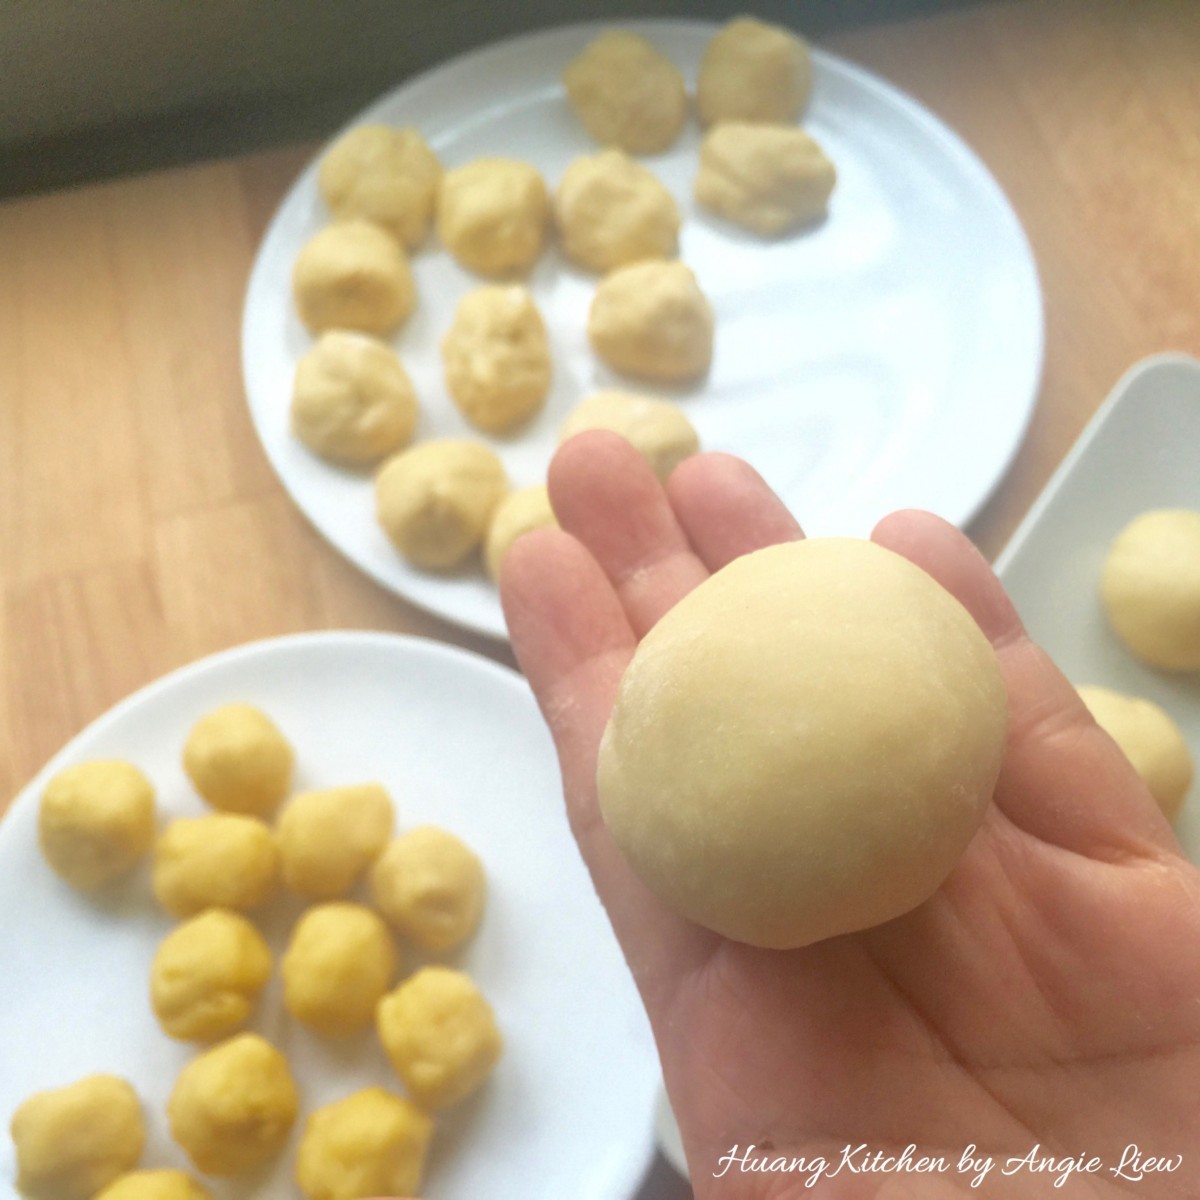 Spiral Curry Puffs recipe - roll dough